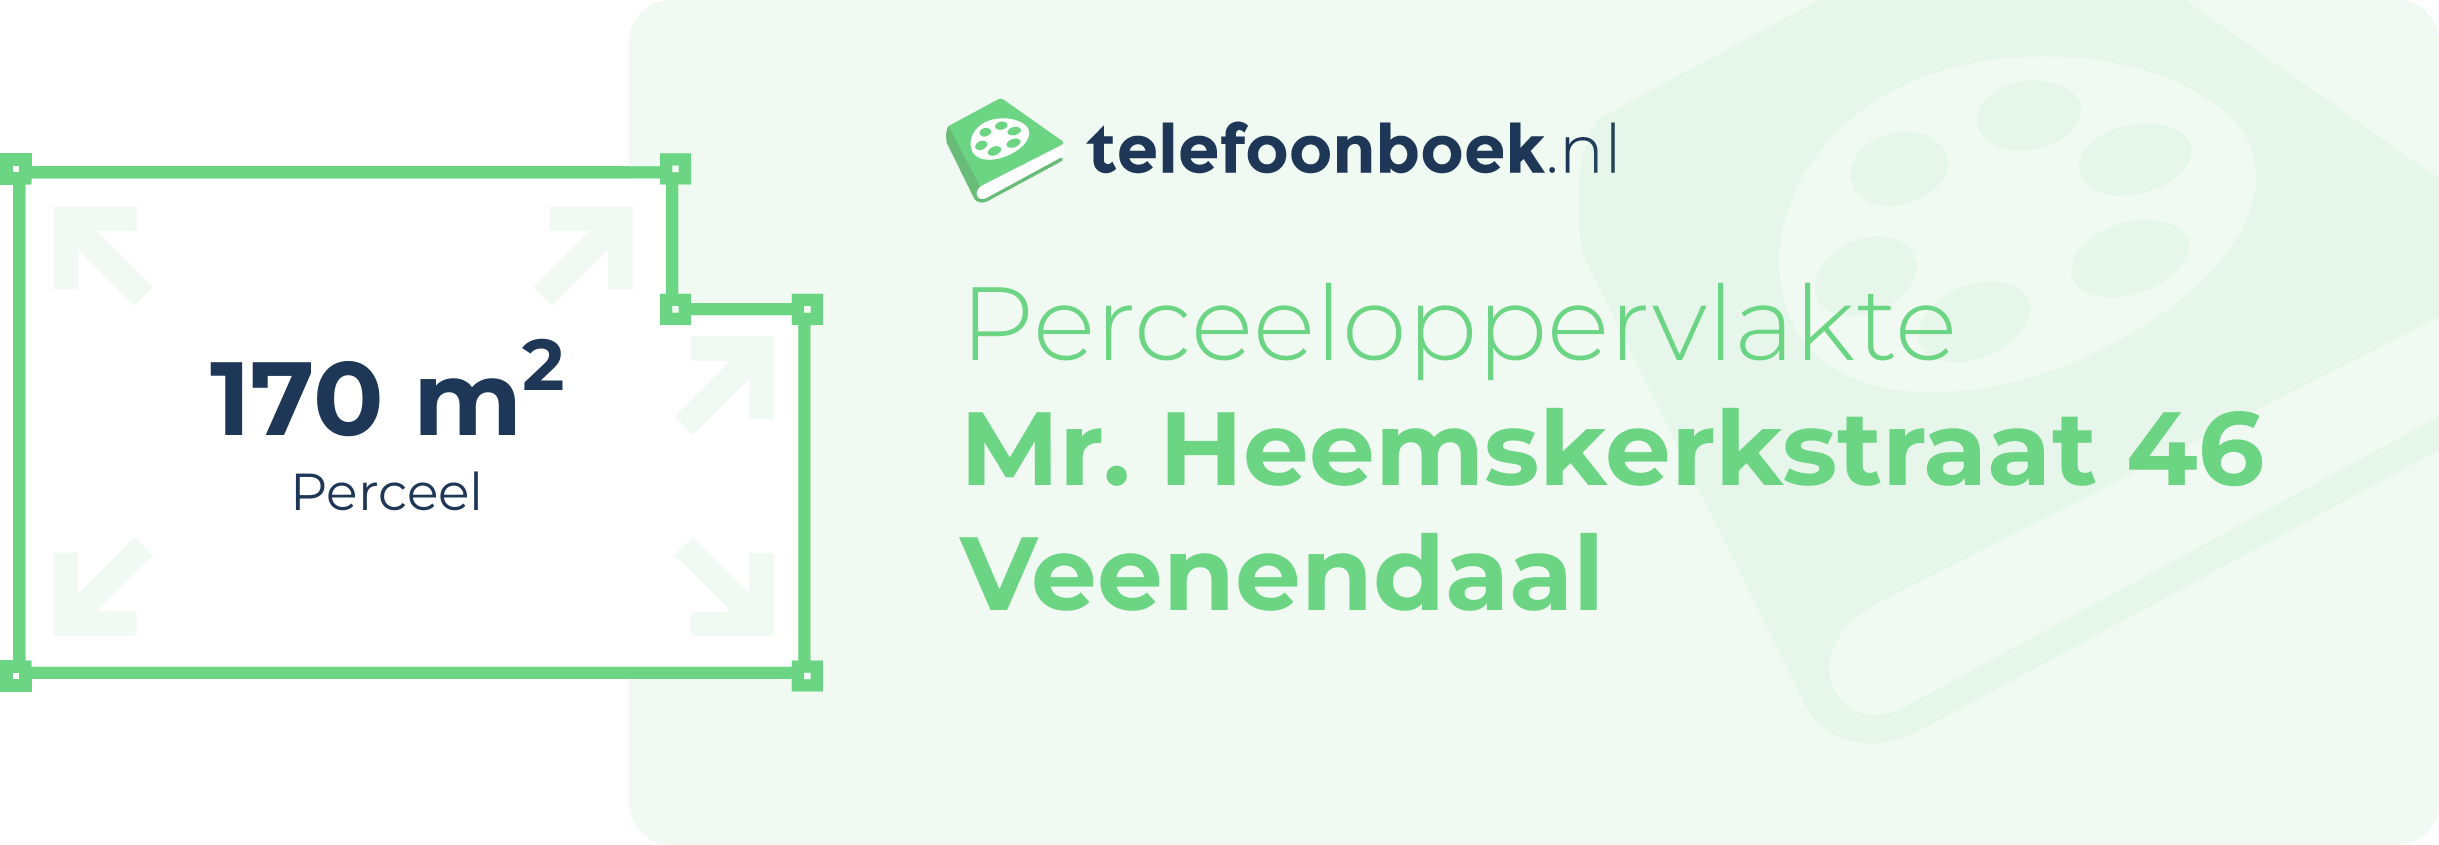 Perceeloppervlakte Mr. Heemskerkstraat 46 Veenendaal